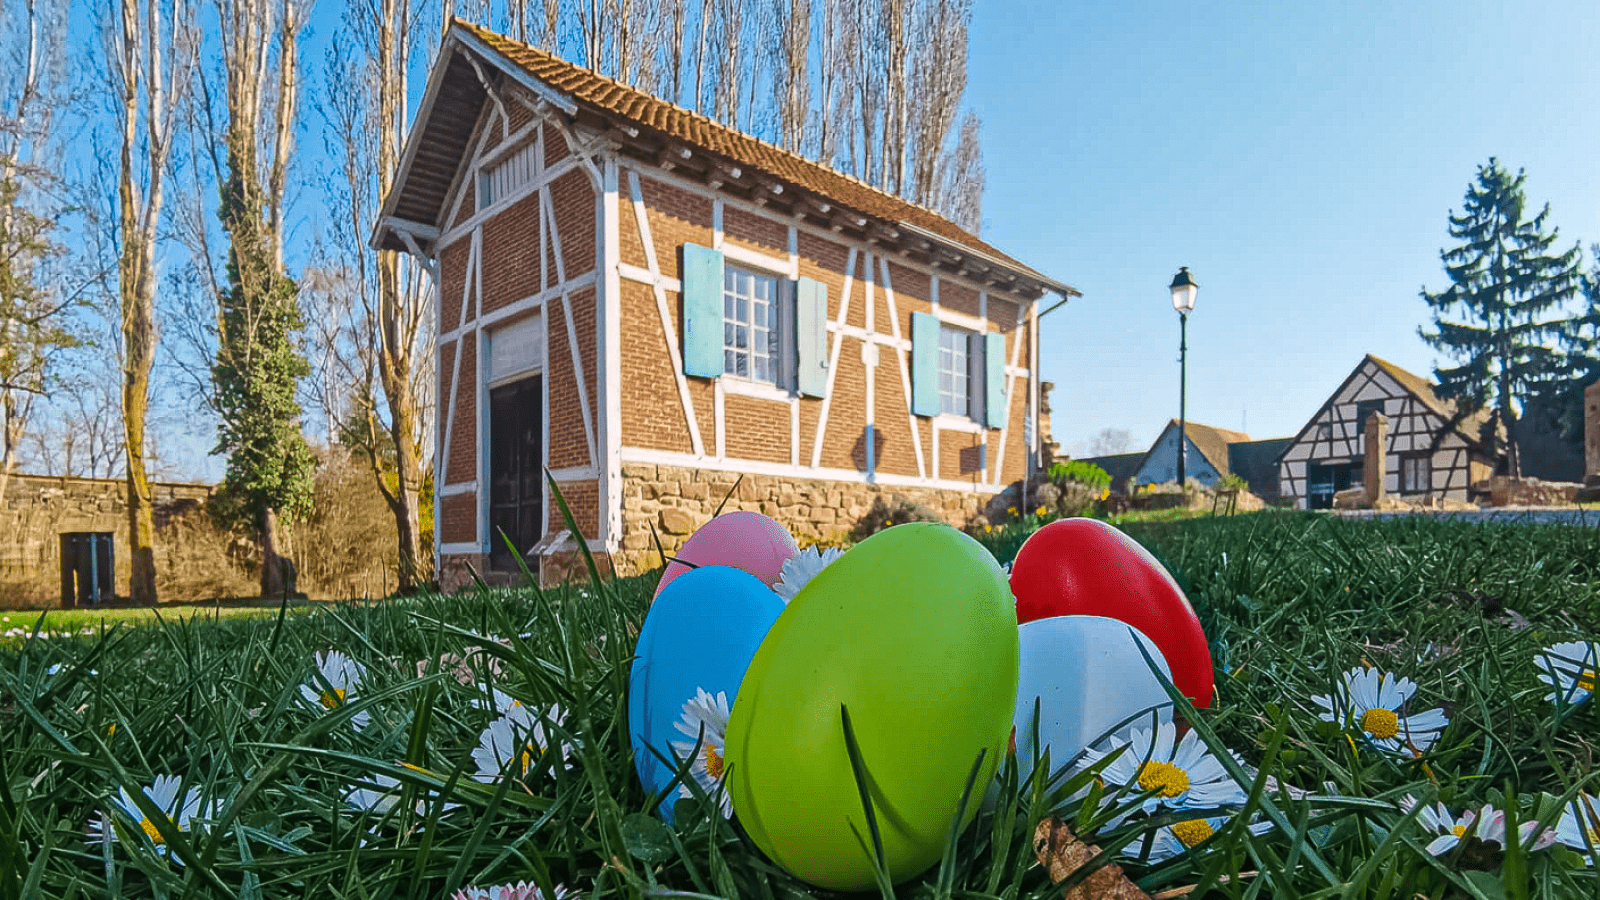 The Écomusée d’Alsace celebrates Easter